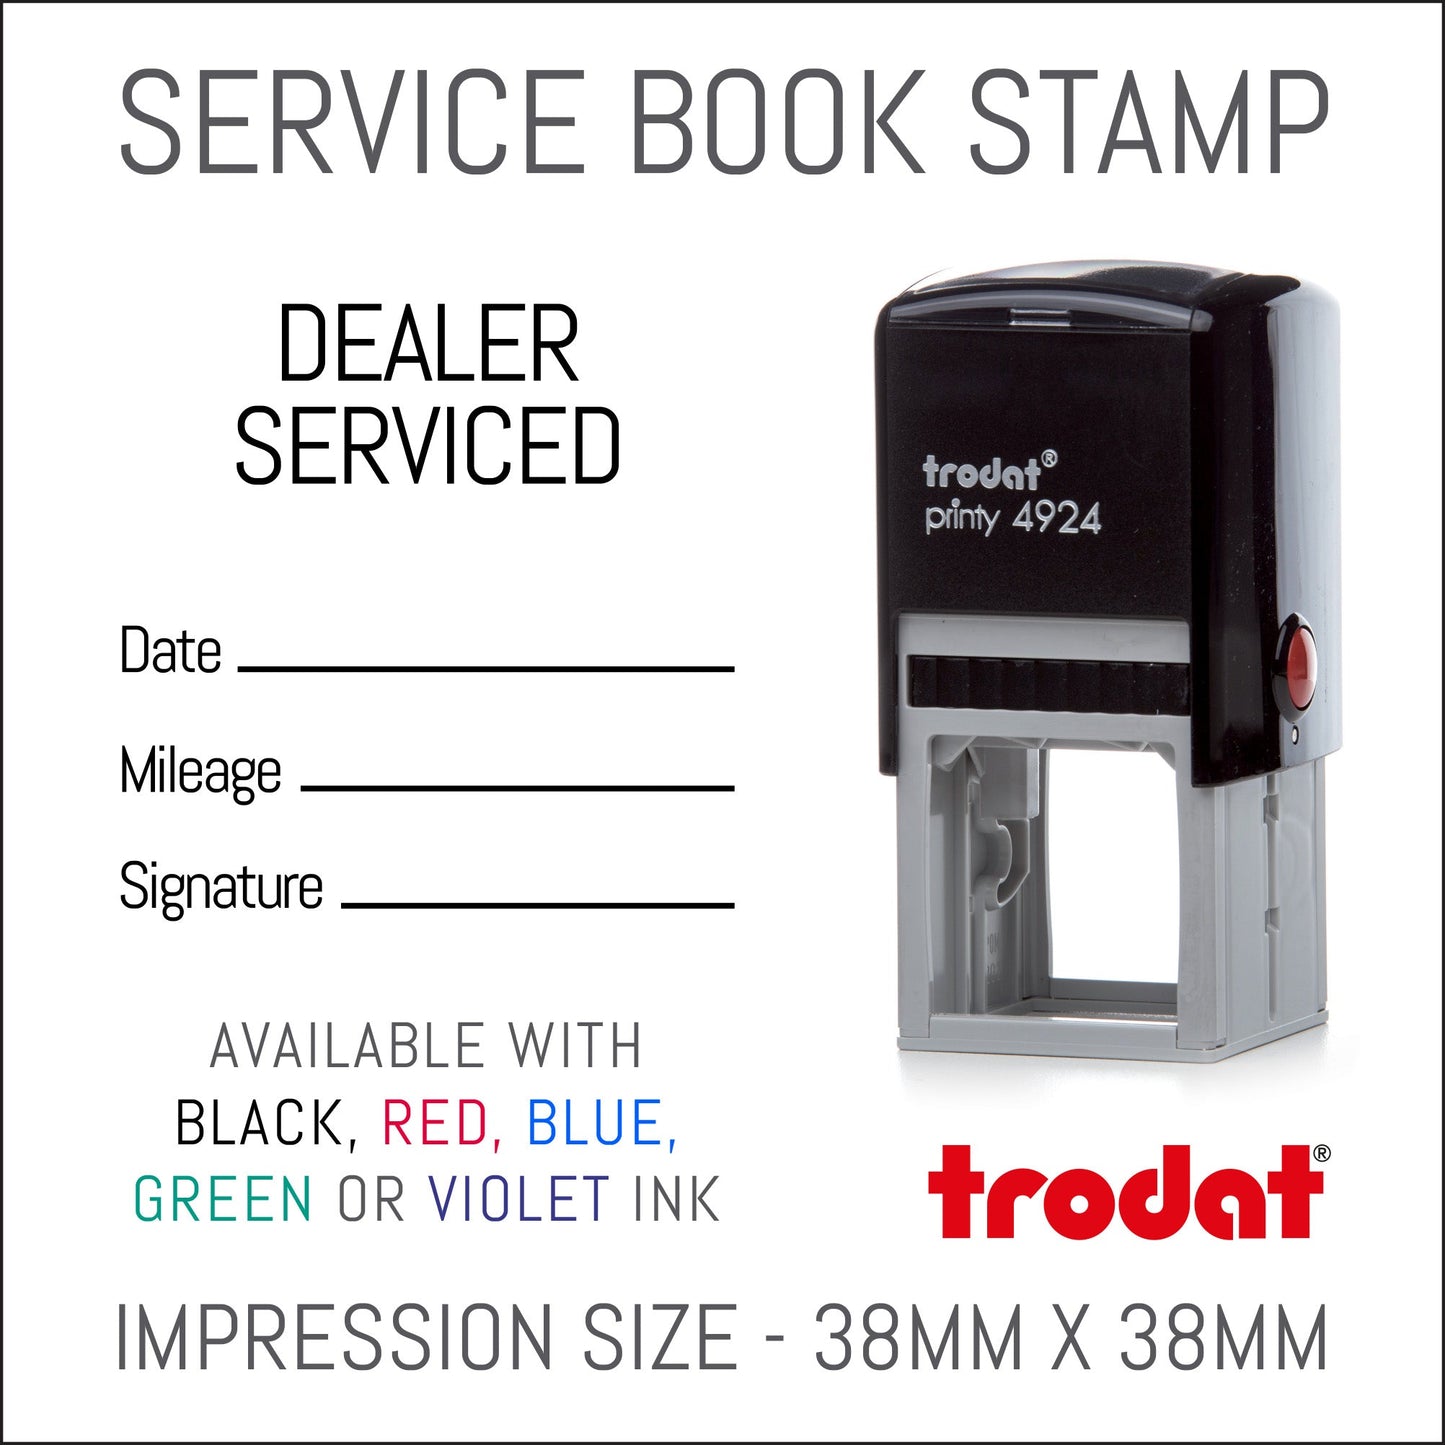 Dealer Serviced - Self Inking Rubber Stamp - Trodat 4924 - 38mm x 38mm Impression